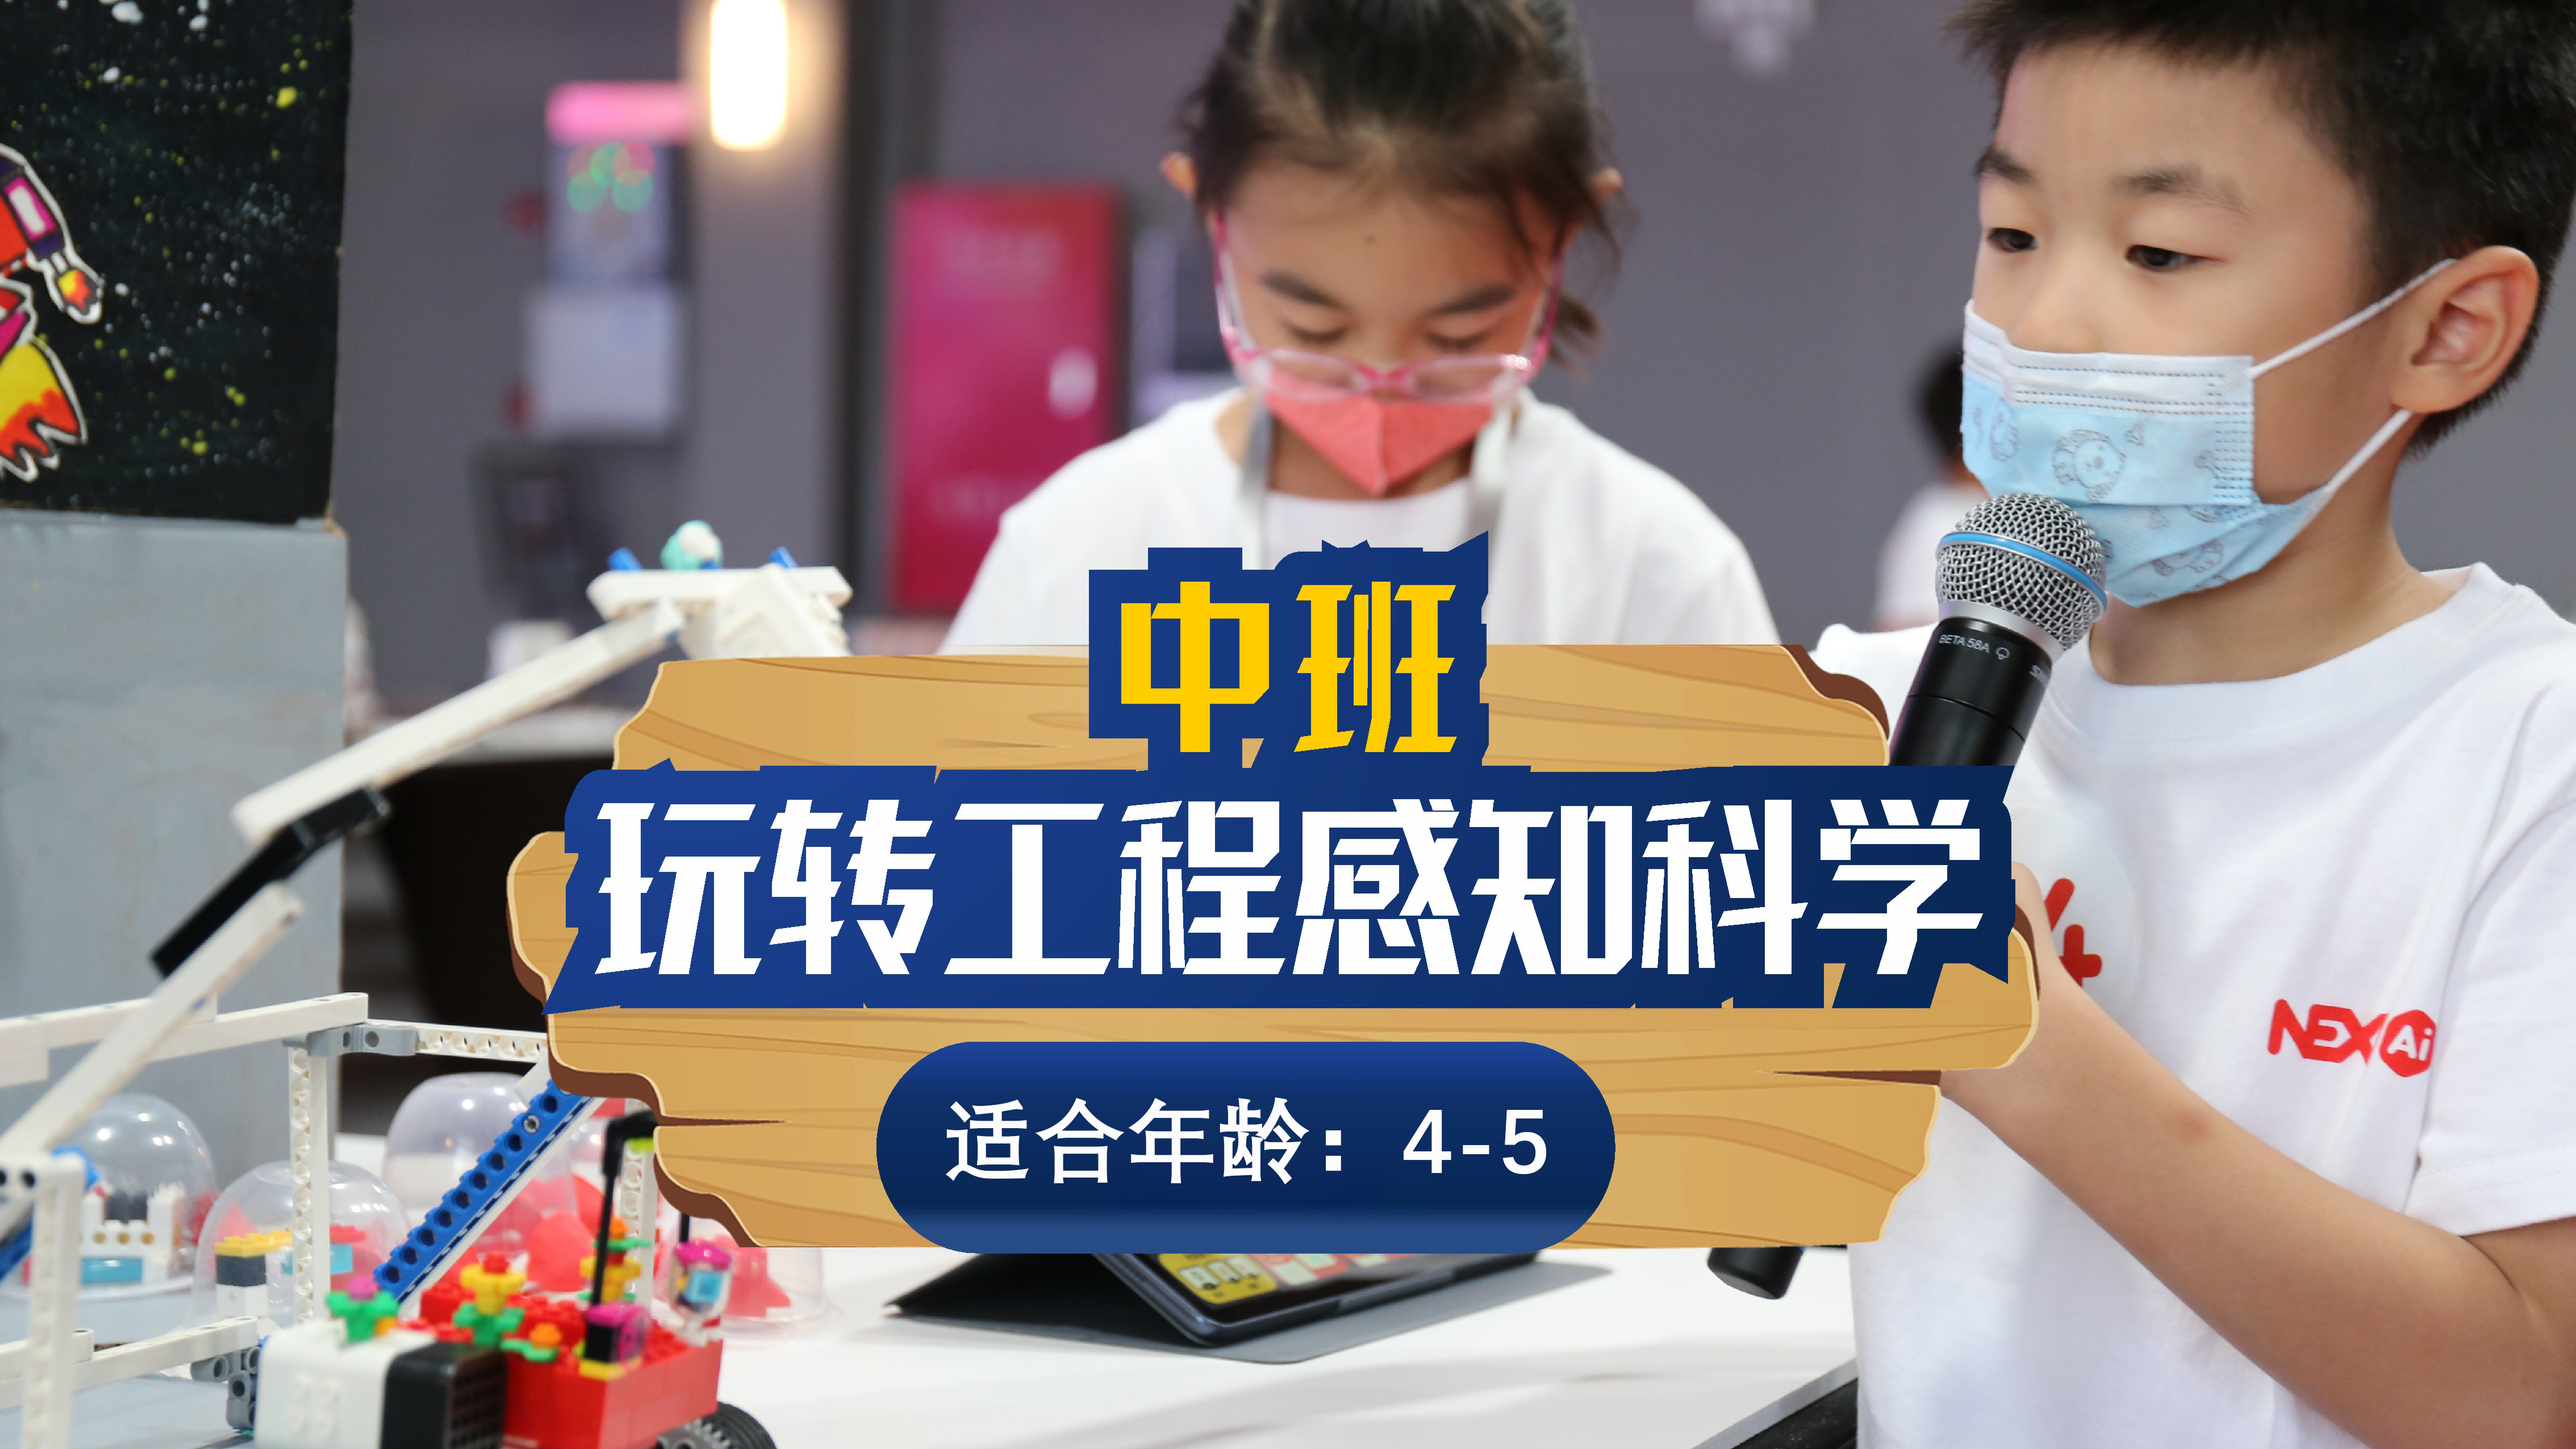 深圳斯坦星球科创编程[4-5岁]玩转工程感知科学课图片